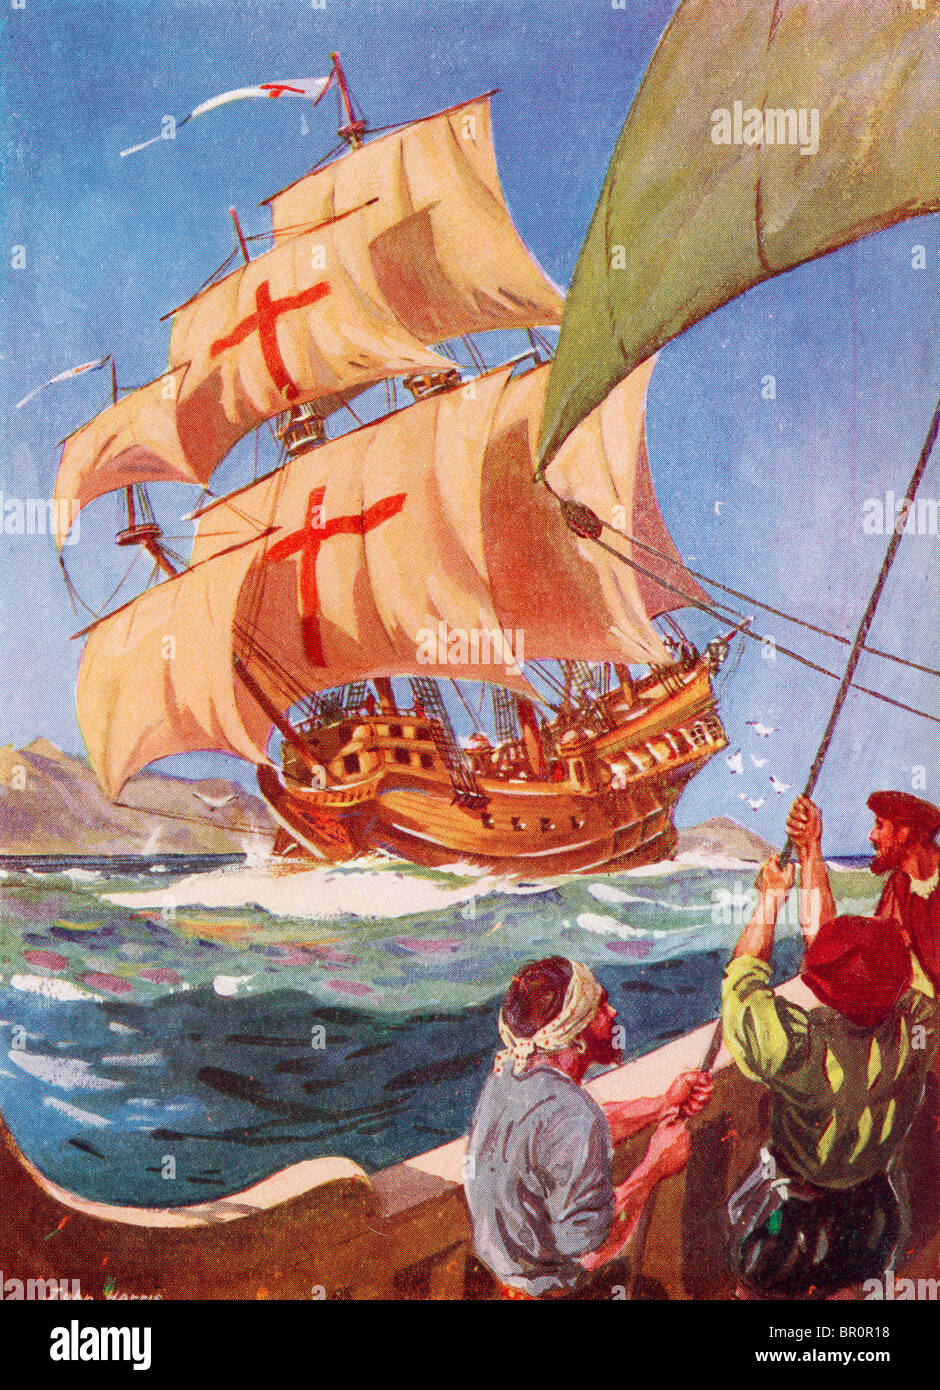 Christophe Colomb quitte la côte de l'Espagne dans son flag ship le Santa Maria sur son premier voyage vers le Nouveau Monde, 1492. Banque D'Images